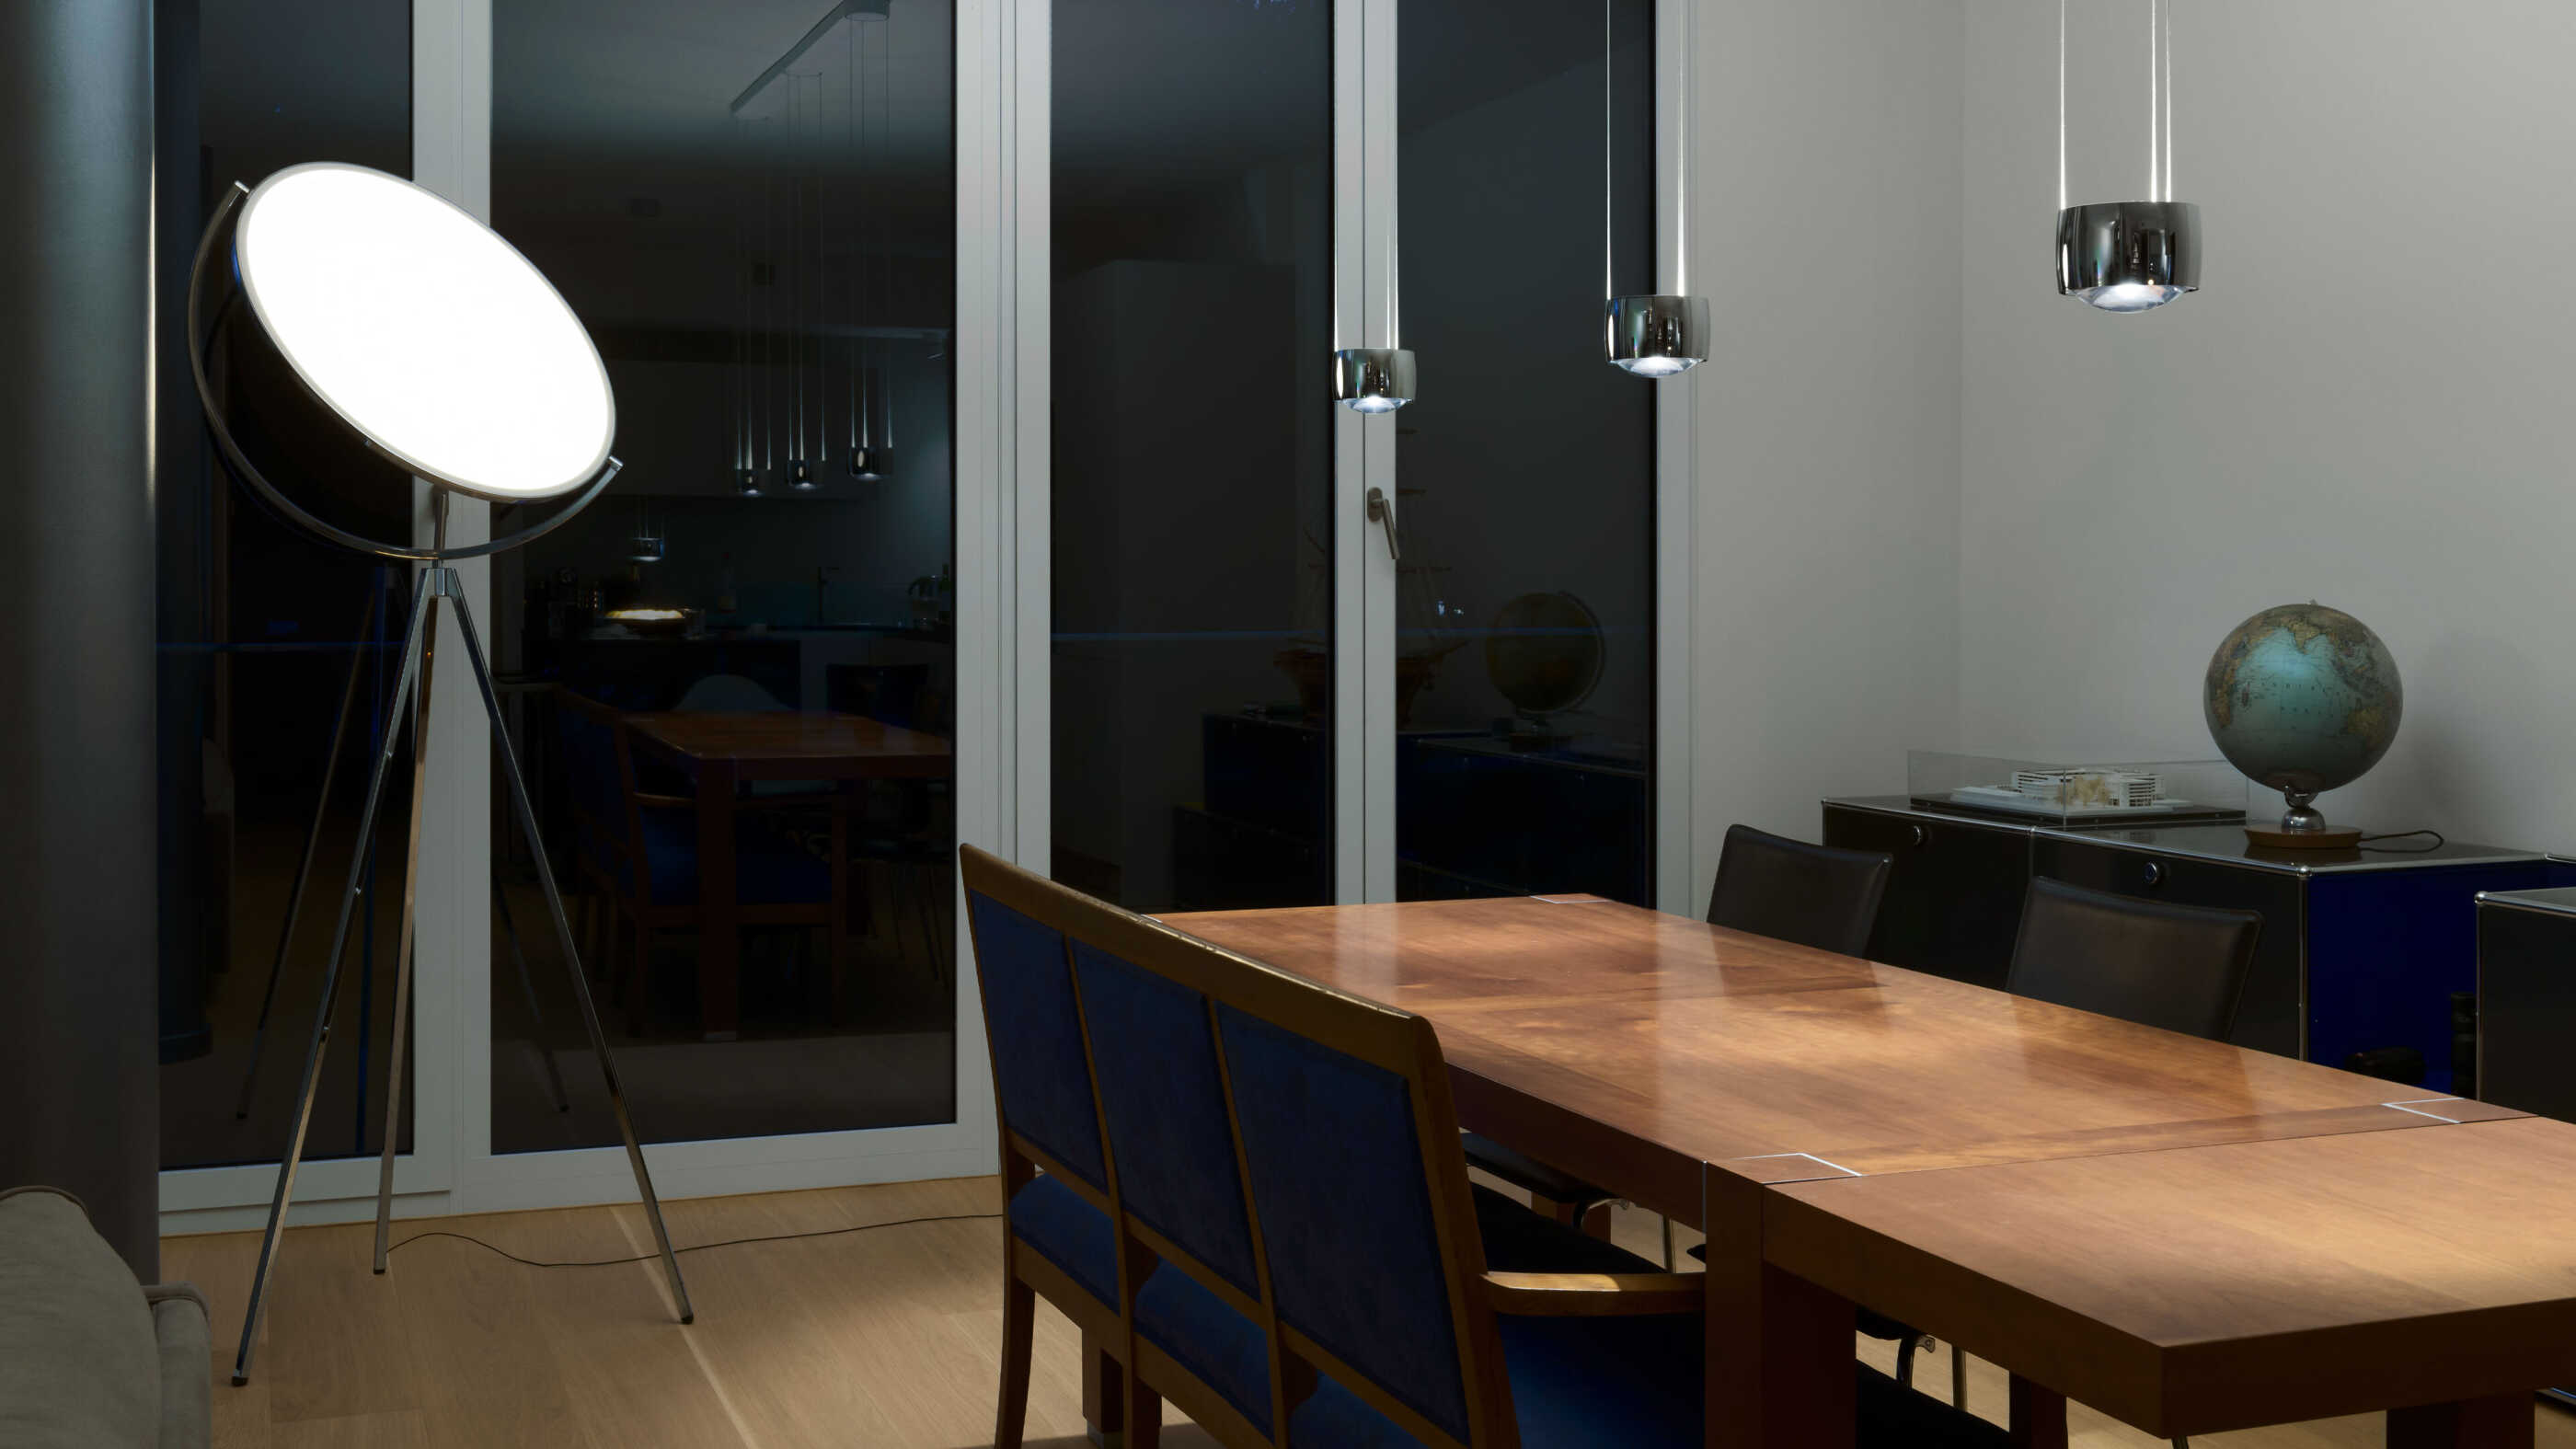 Ein Esstisch wird von drei Pendelleuchten direkt beleuchtet. Eine Standleuchte trägt mit diffusem Licht zum Raumlicht bei.